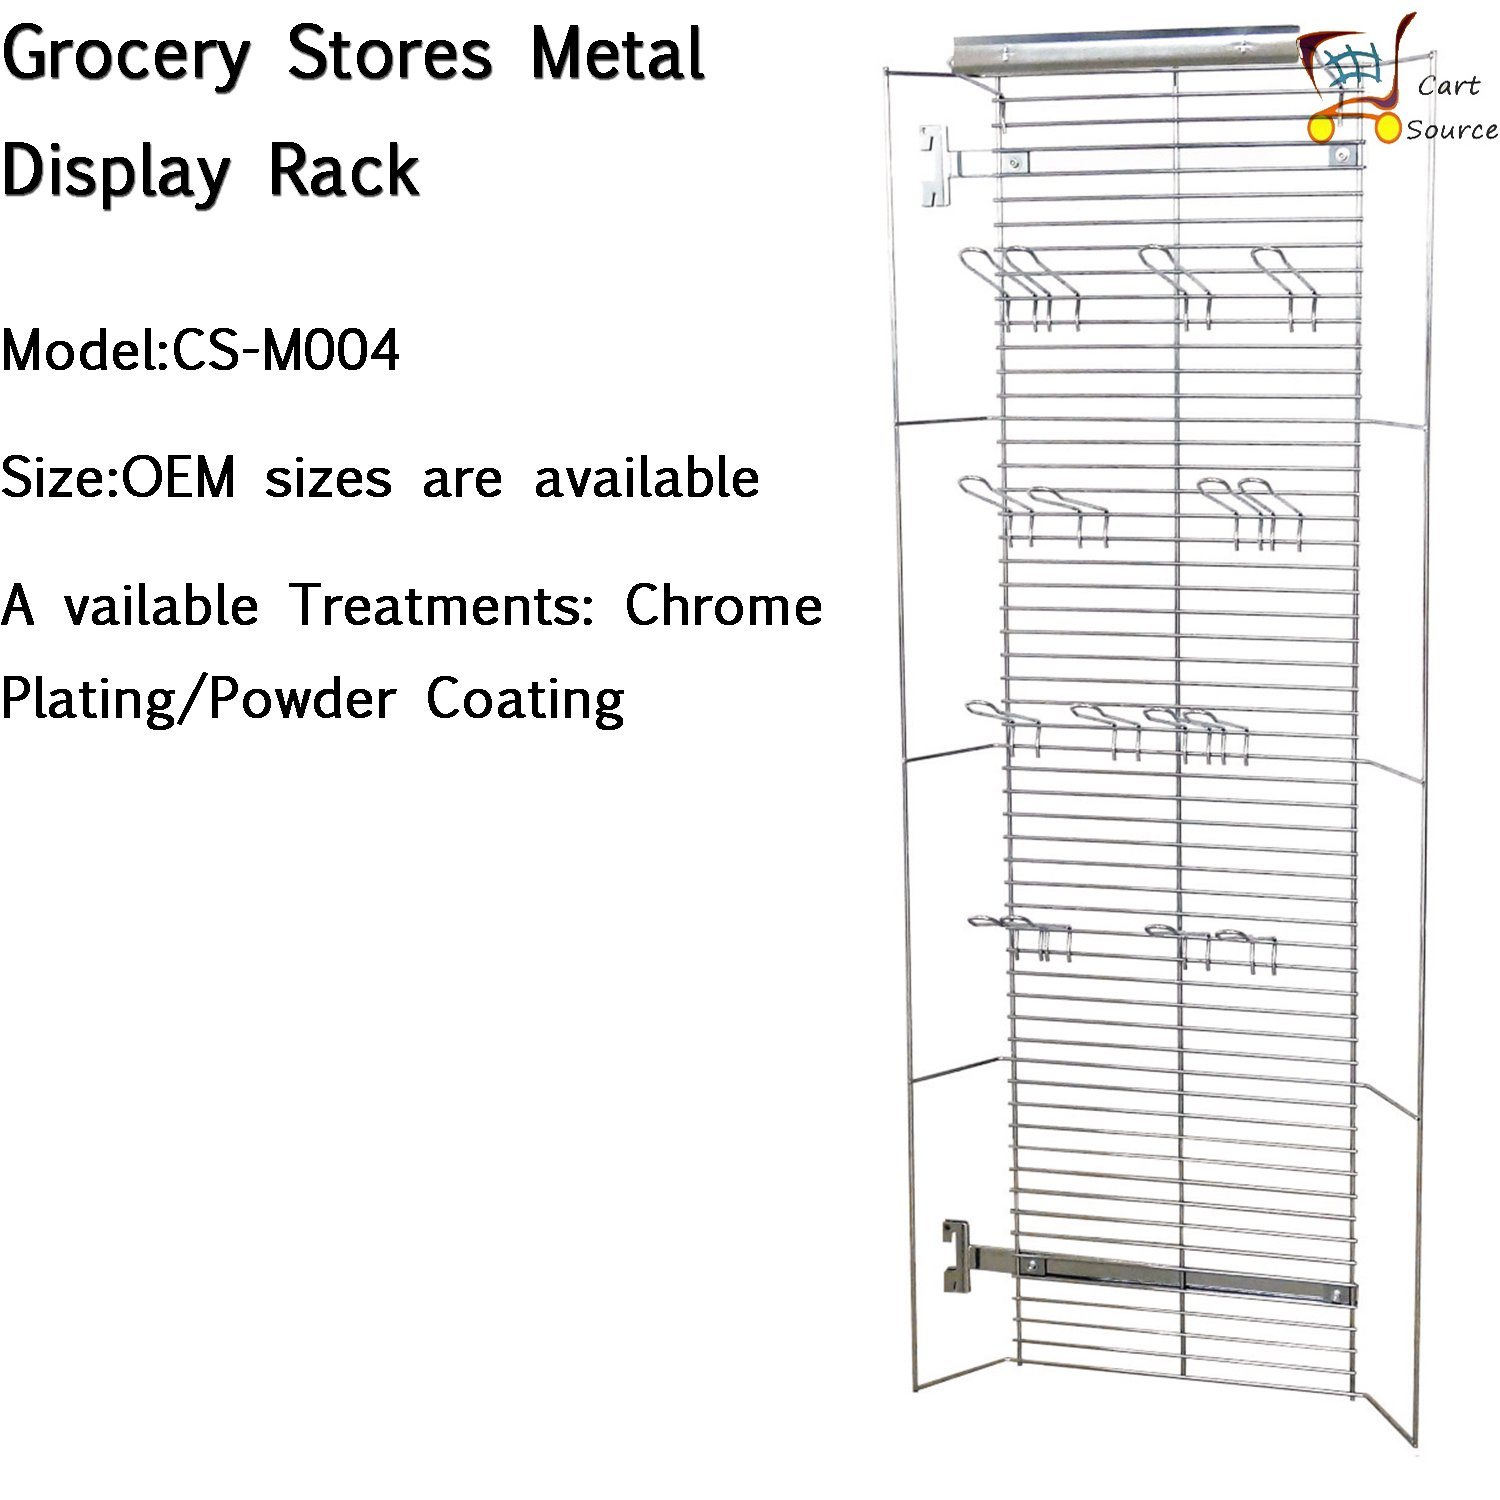 /proimages/2f0j00jQNUeFignvoG/metal-display-racks-for-grocery-stores.jpg